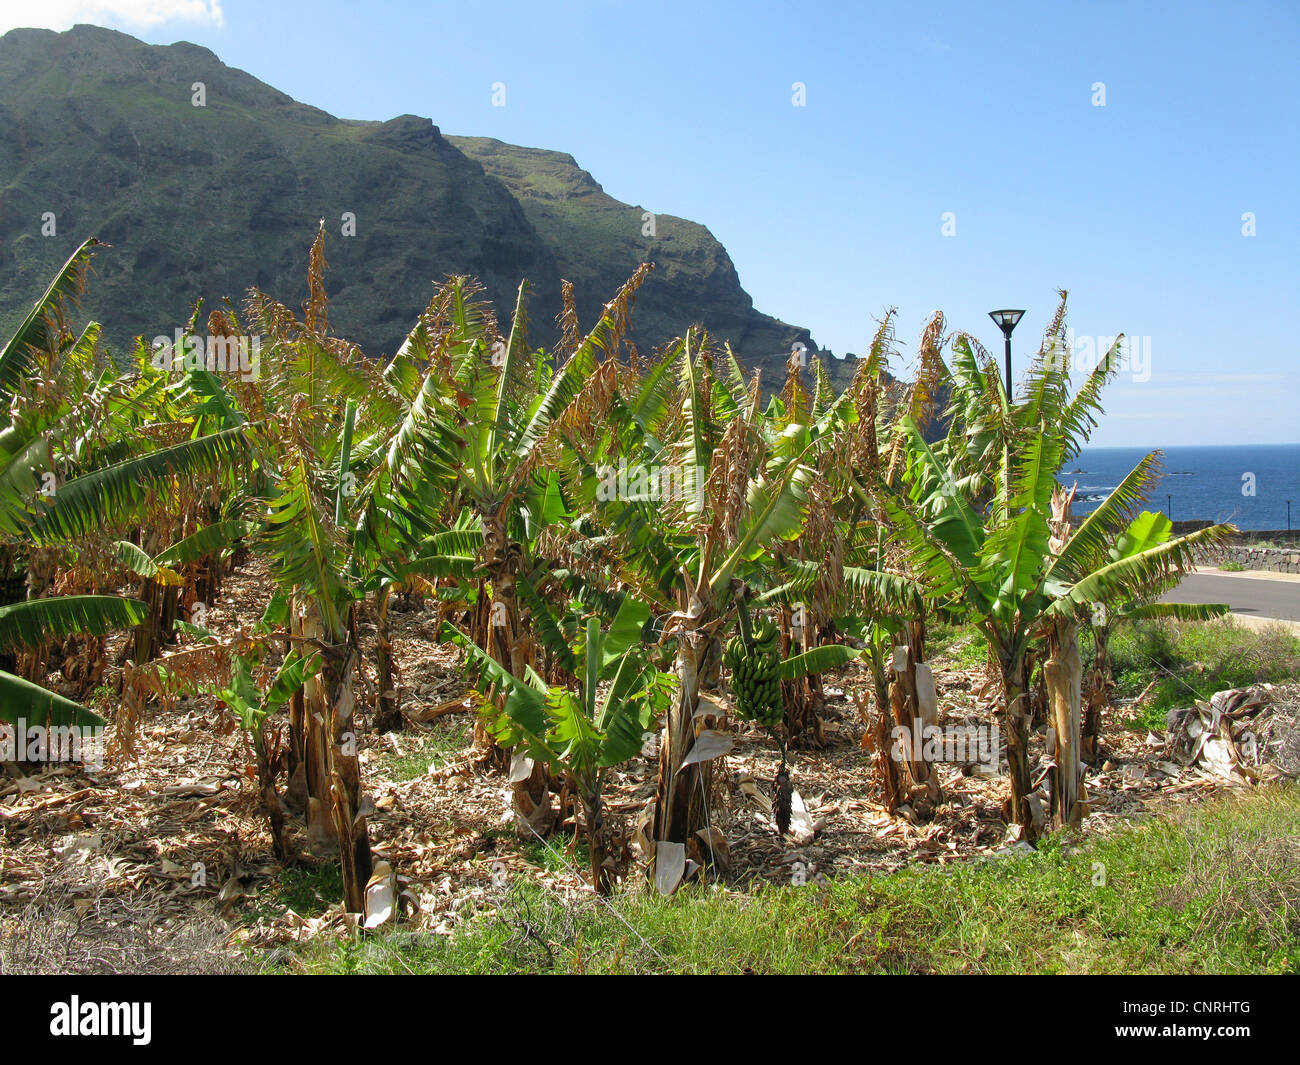 banana (Musa paradisiaca, Musa x paradisiaca), banana plantation in the nothwest, Canary Islands, Tenerife, Playa Arenosa Stock Photo